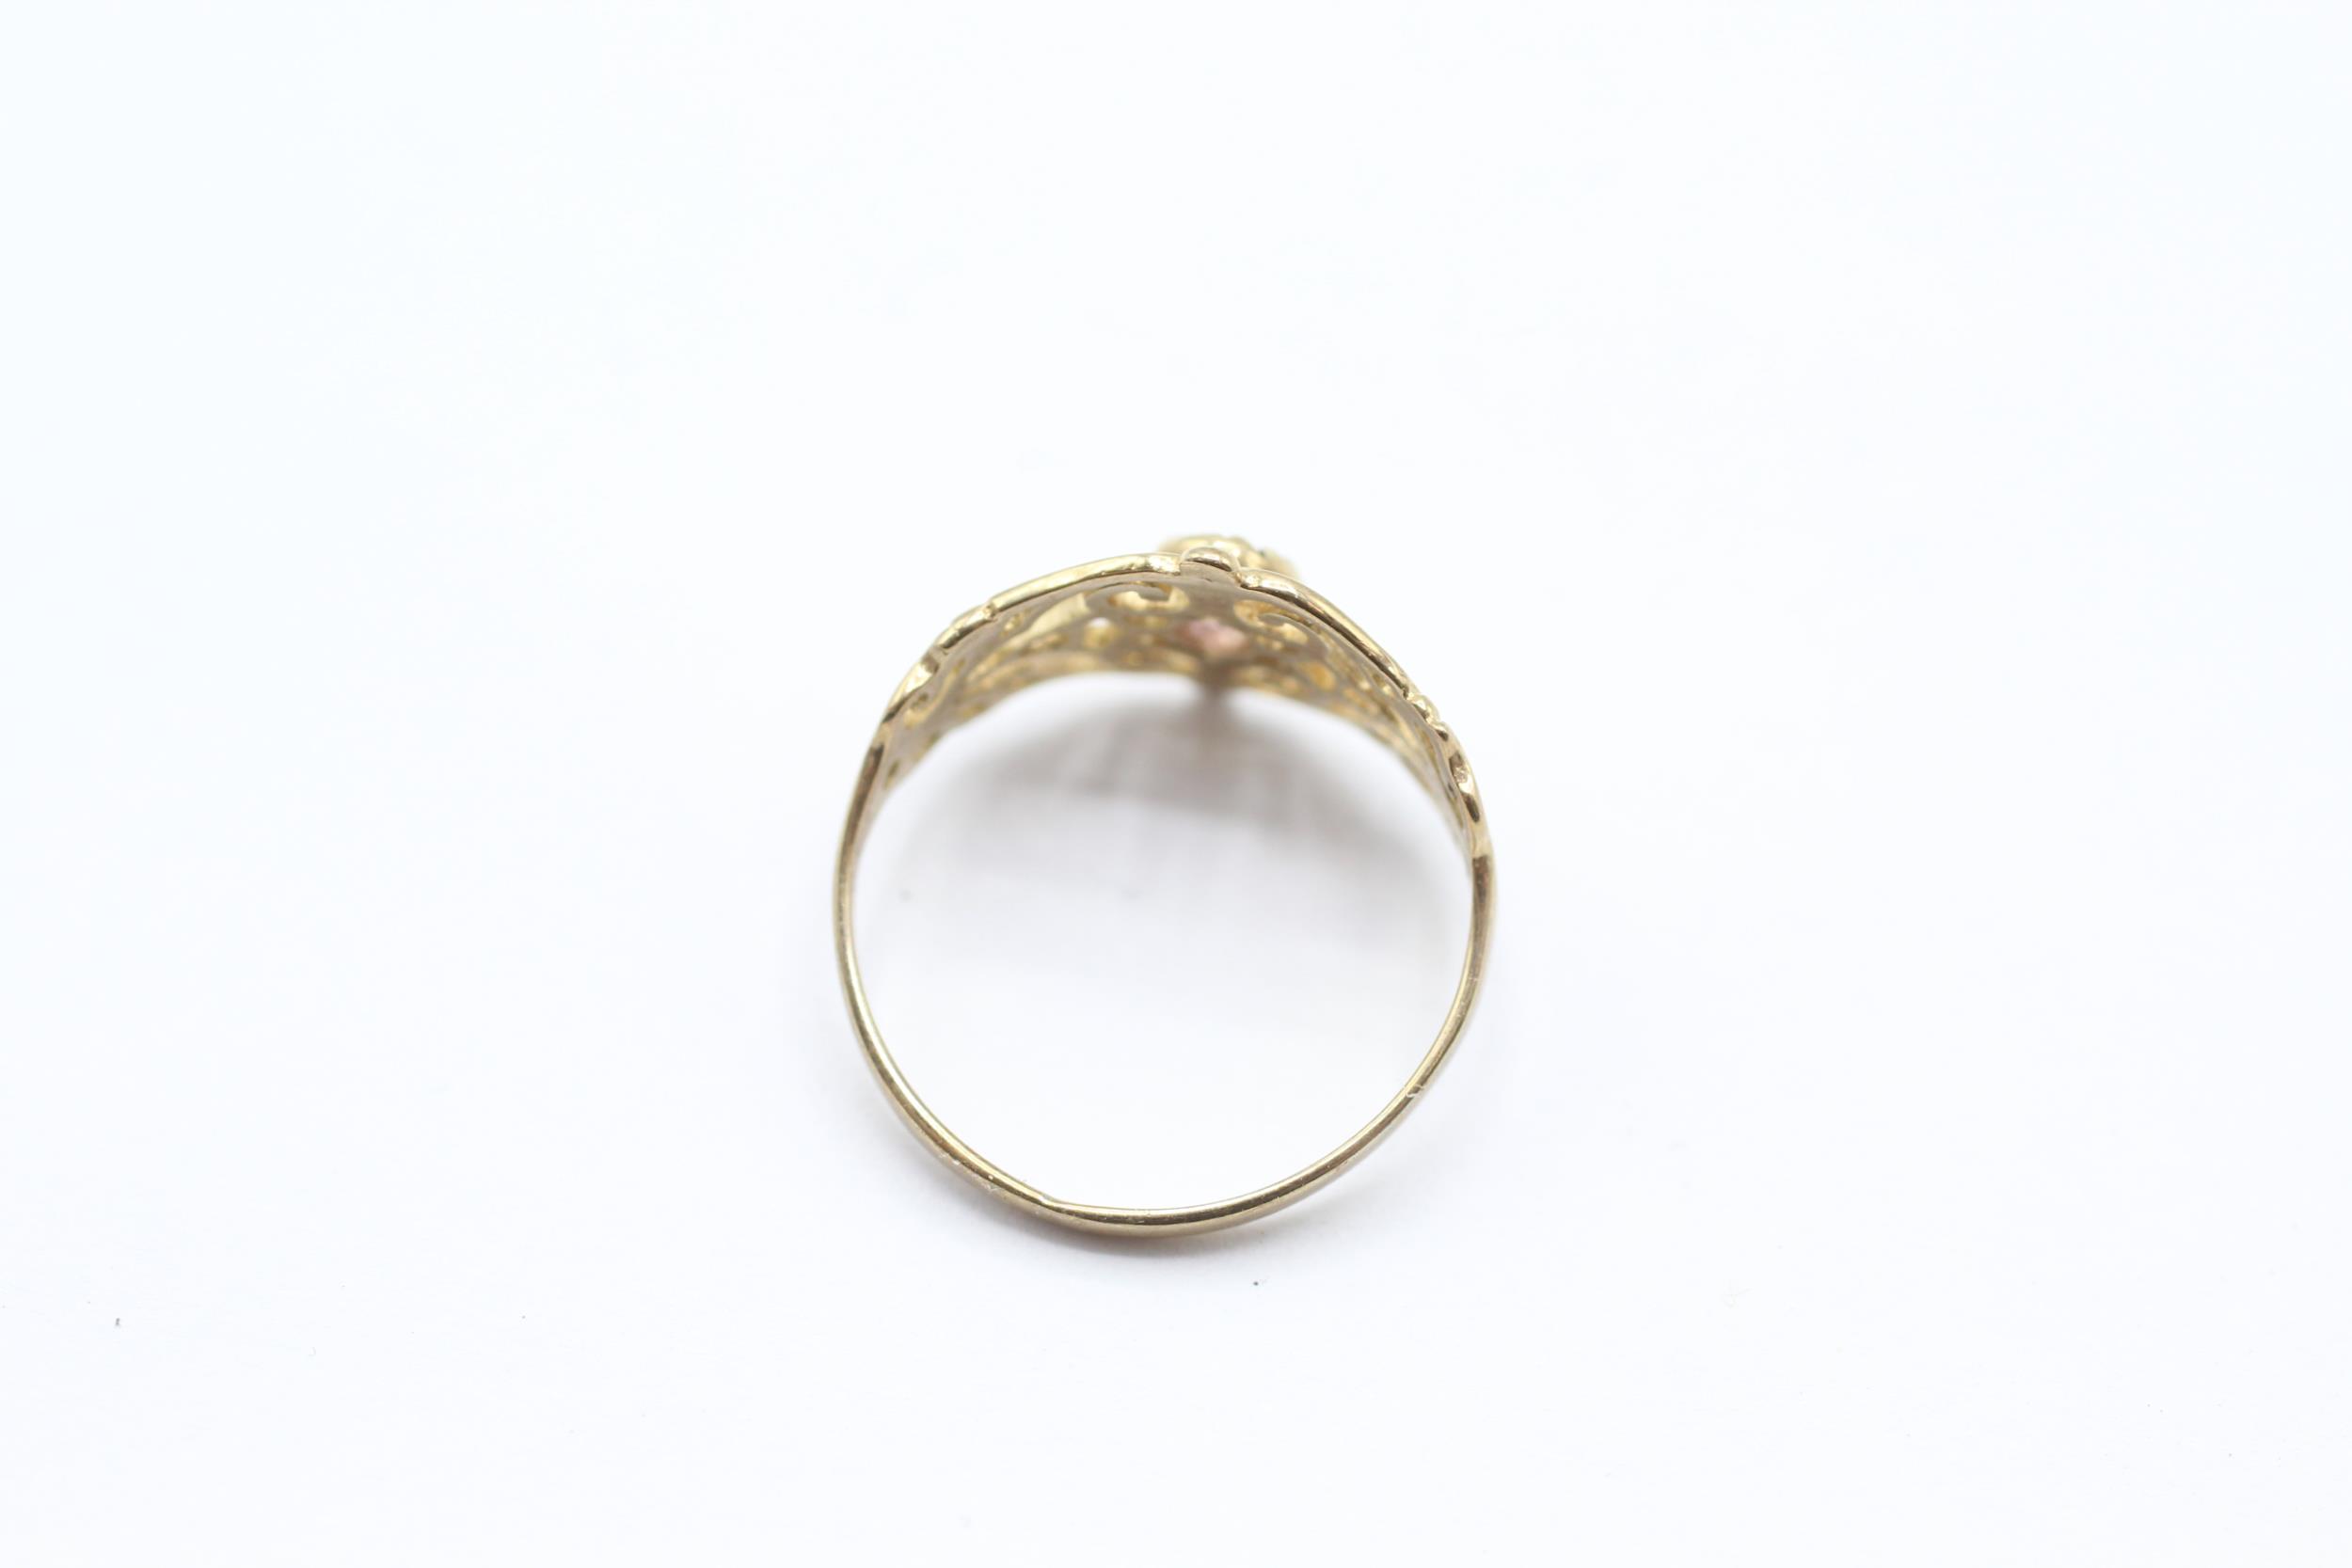 9ct gold amethyst set scrolling openwork shoulder dress ring Size H - 0.9 g - Image 4 of 4